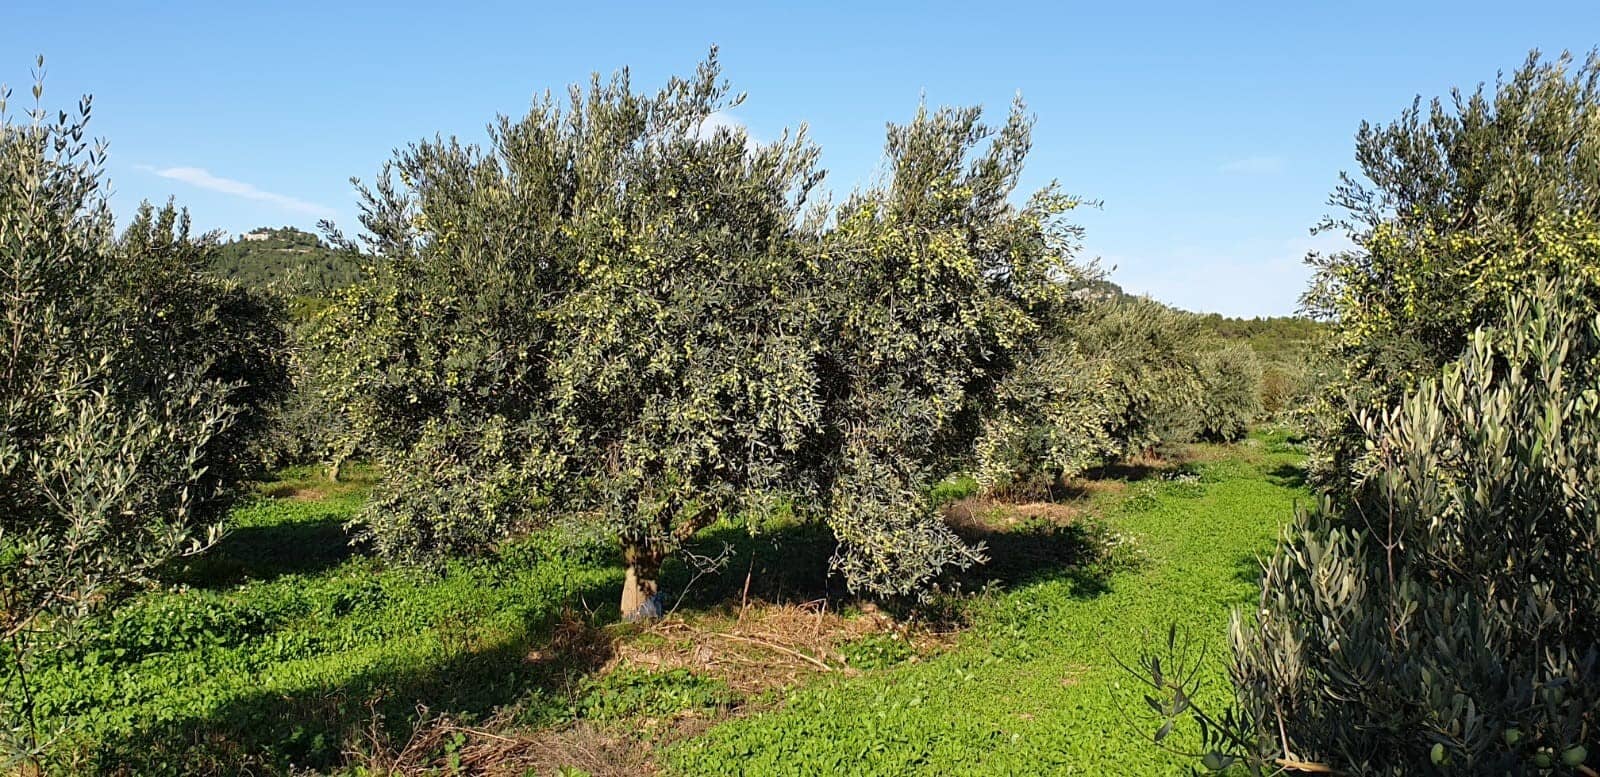 europa-profili-la-migliore-produzione-di-olio-di-oliva-una-tradizione-di-famiglia-mette-radici-a-moulin-de-la-coquille-l-epoca-dell-olio-d-oliva